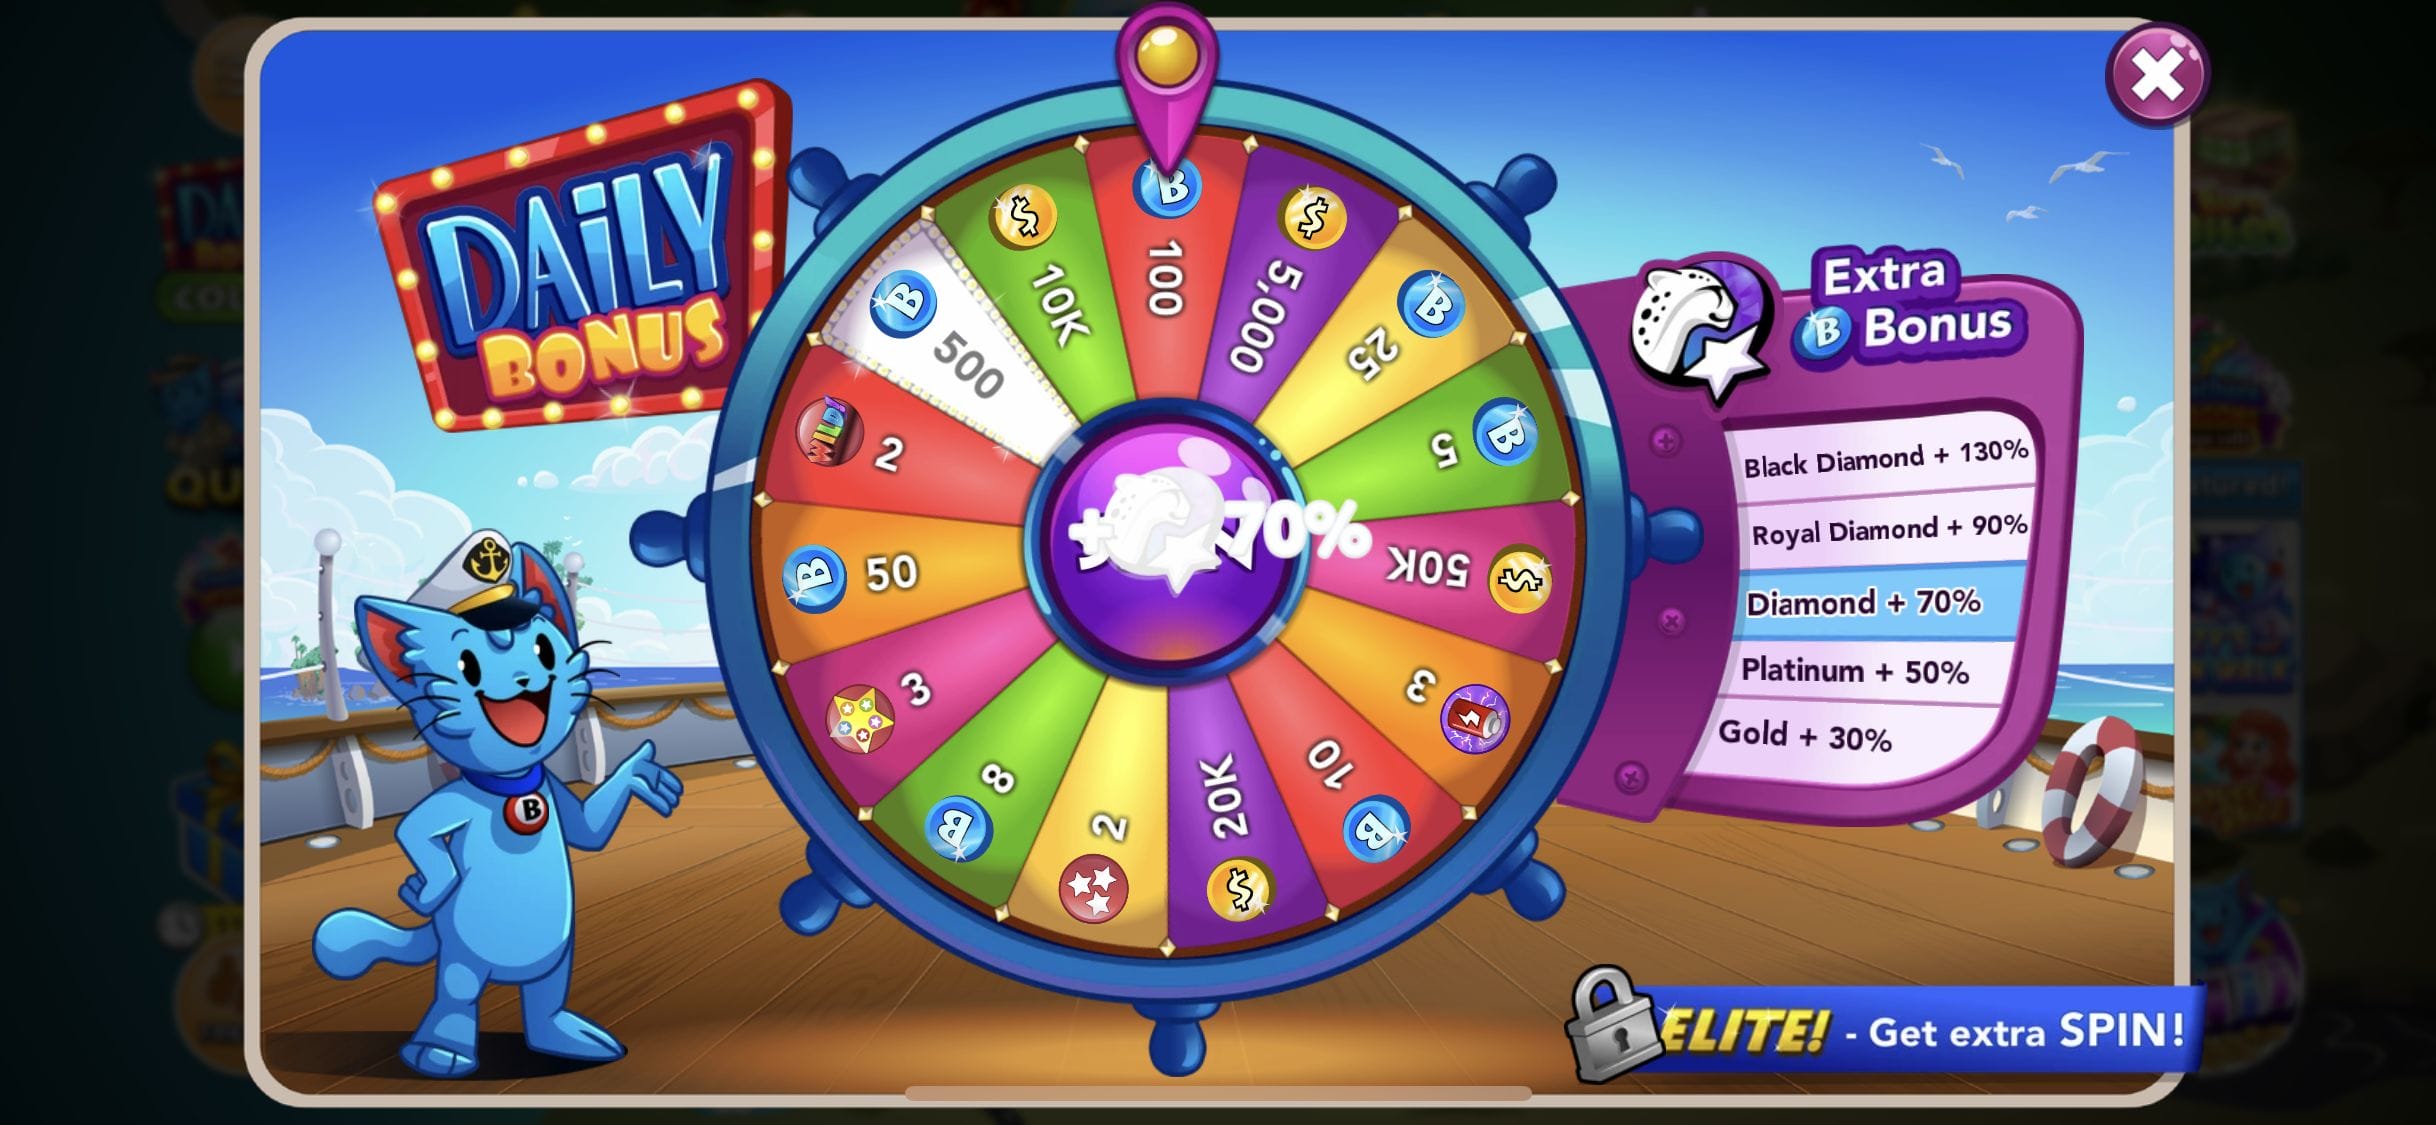 buzz bingo 10 free spins no deposit